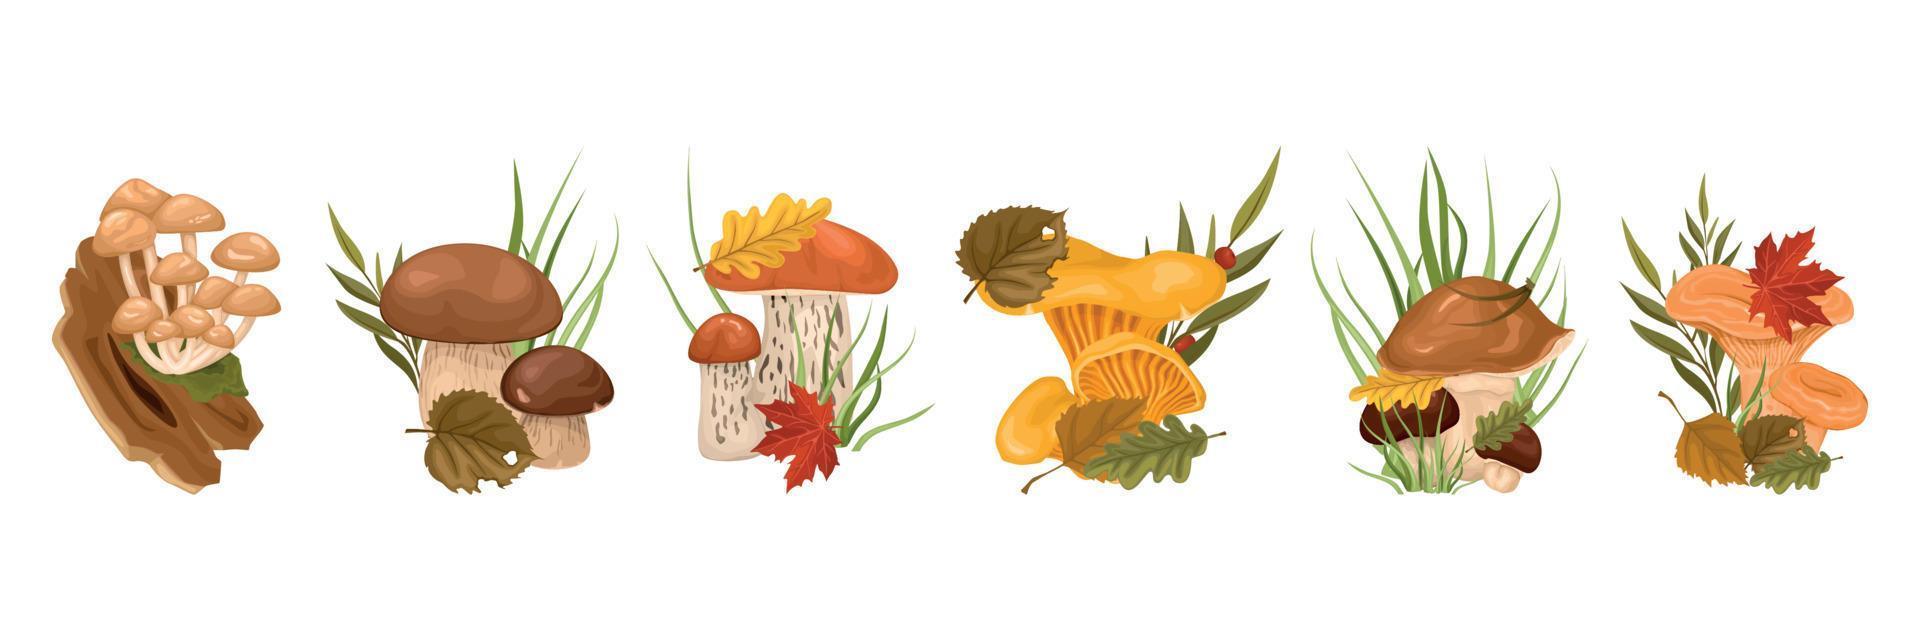 cogumelos da floresta com conjunto de desenhos animados de folhas vetor